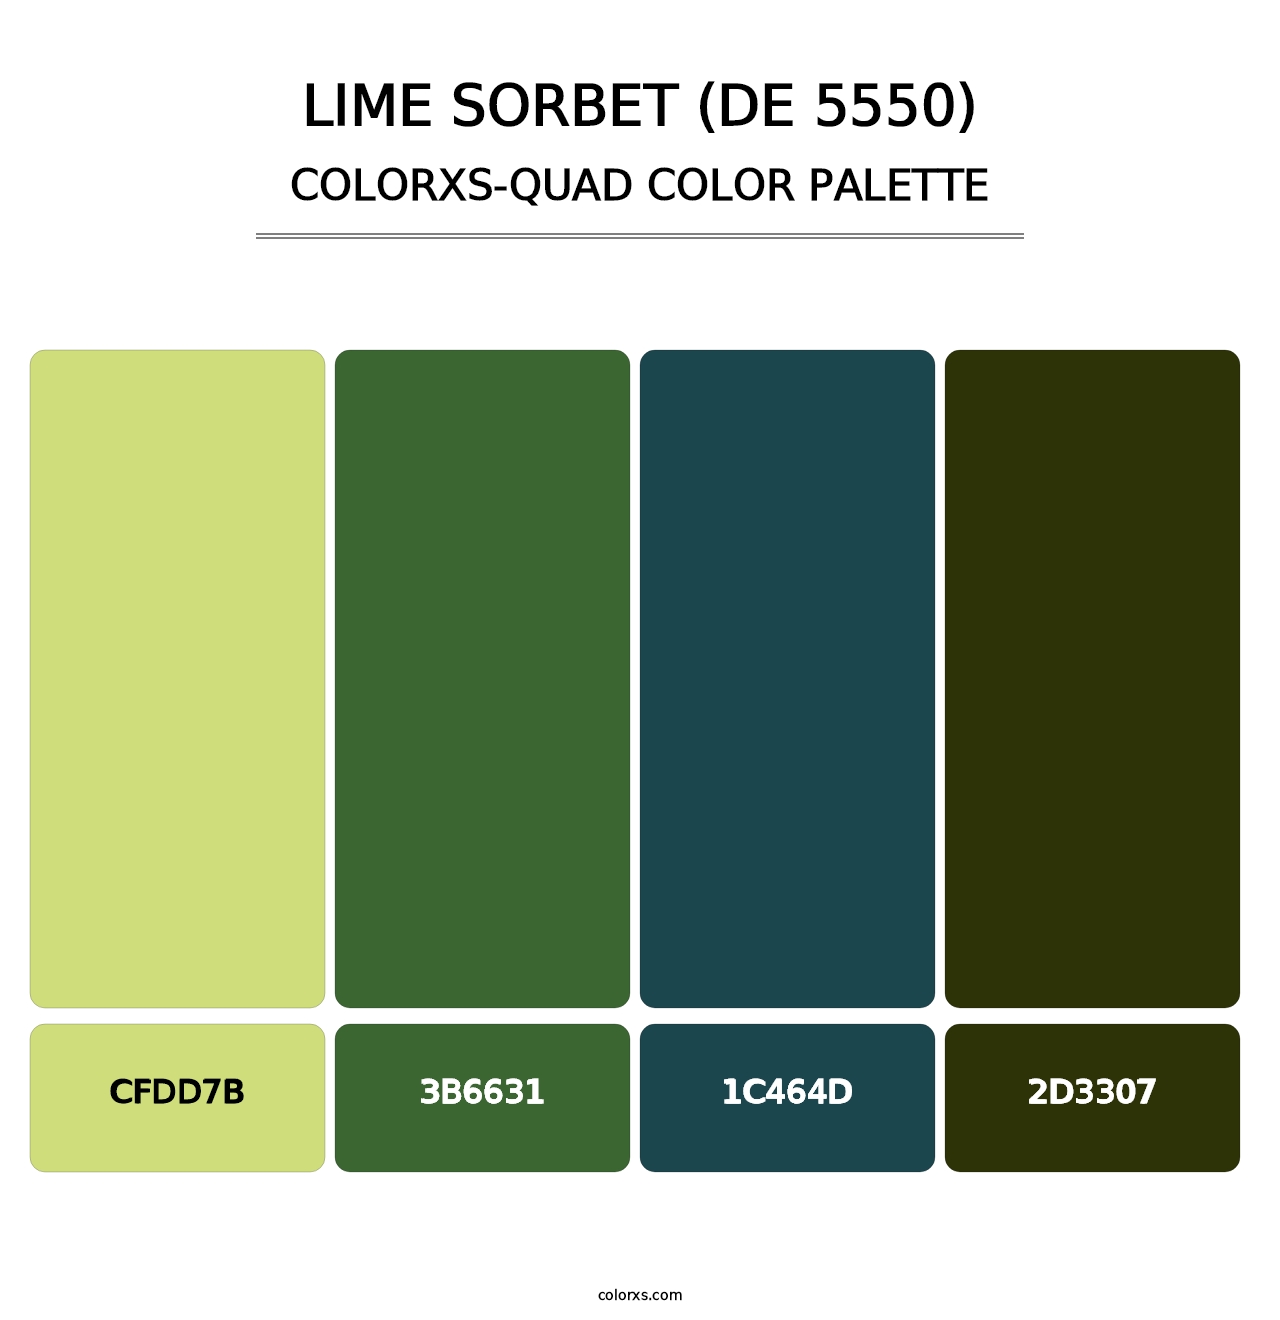 Lime Sorbet (DE 5550) - Colorxs Quad Palette